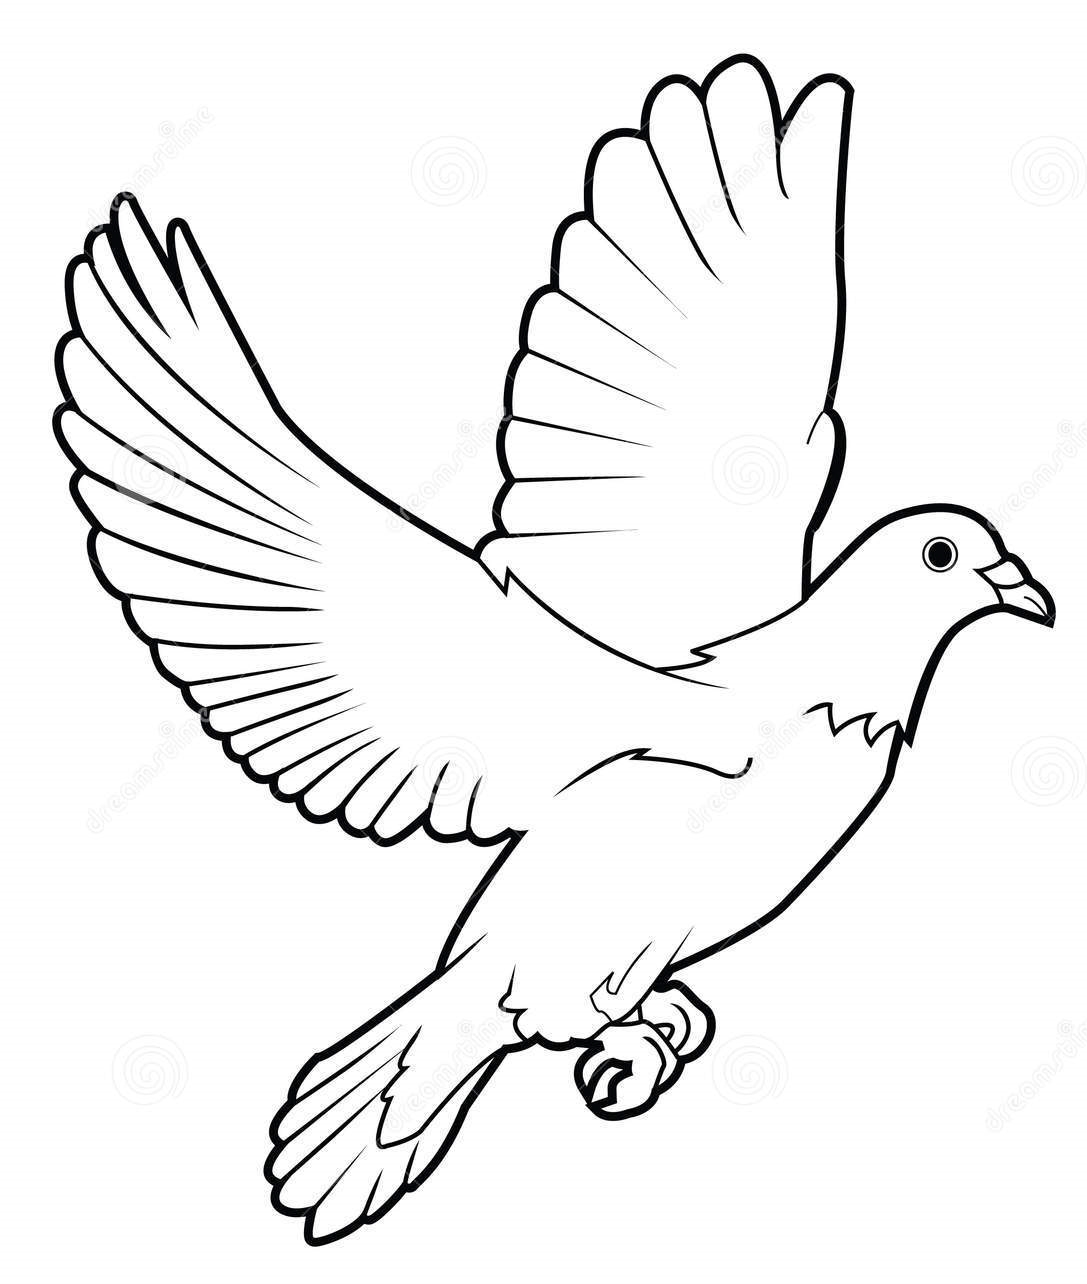 Графическое изображение голубя